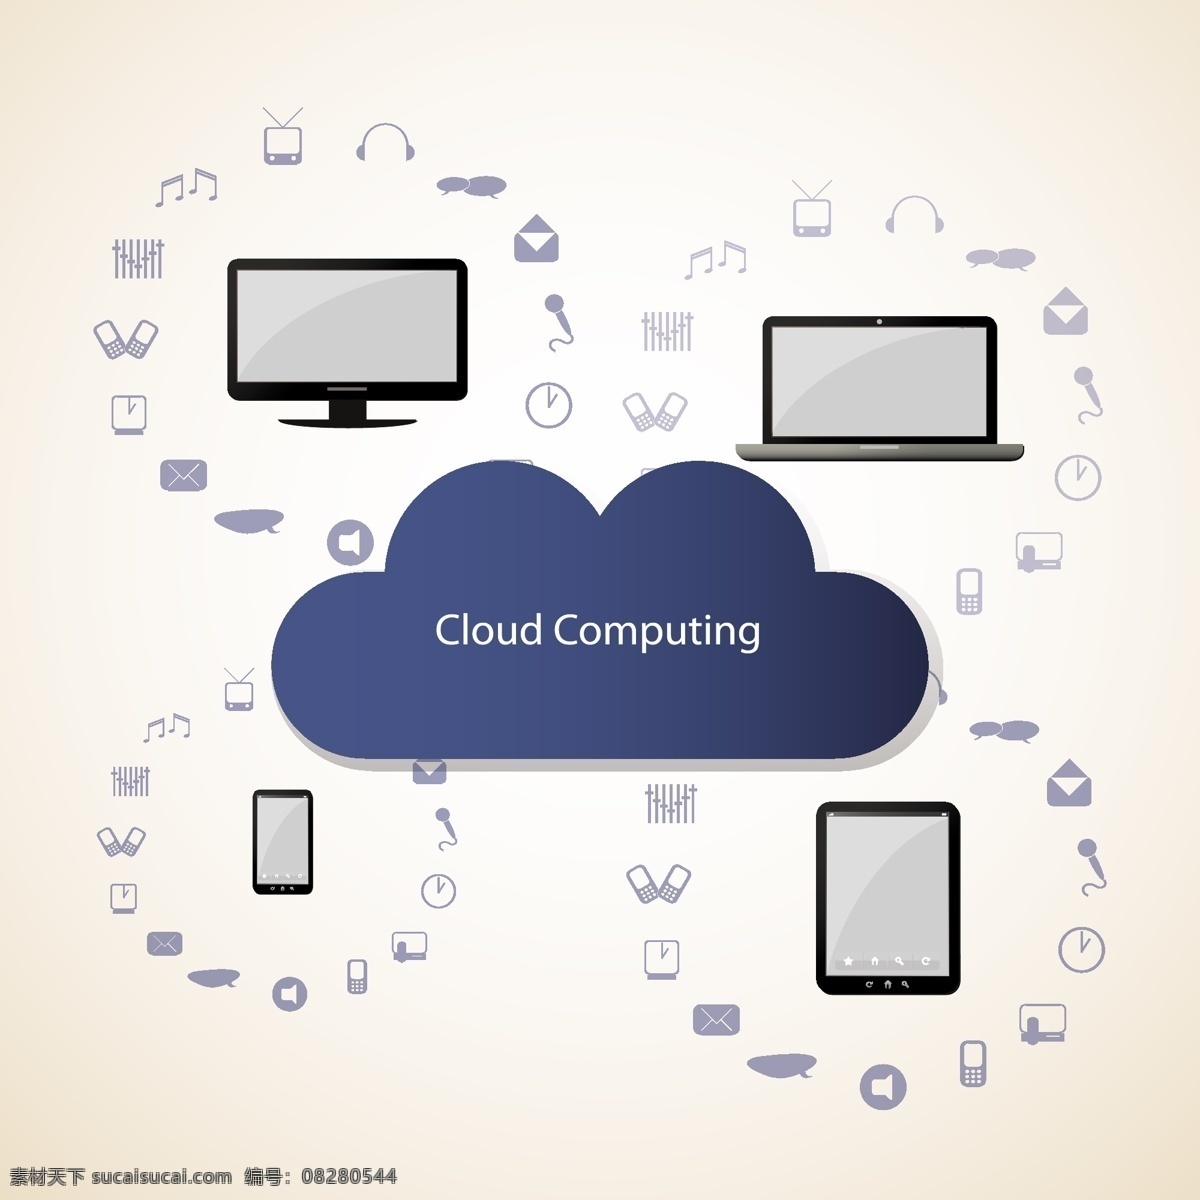 电脑 手机 图标 云 计算 云服务 云计算图标 云系统 网络科技 信息科技 云朵 平板电脑 智能手机 生活百科 矢量素材 白色